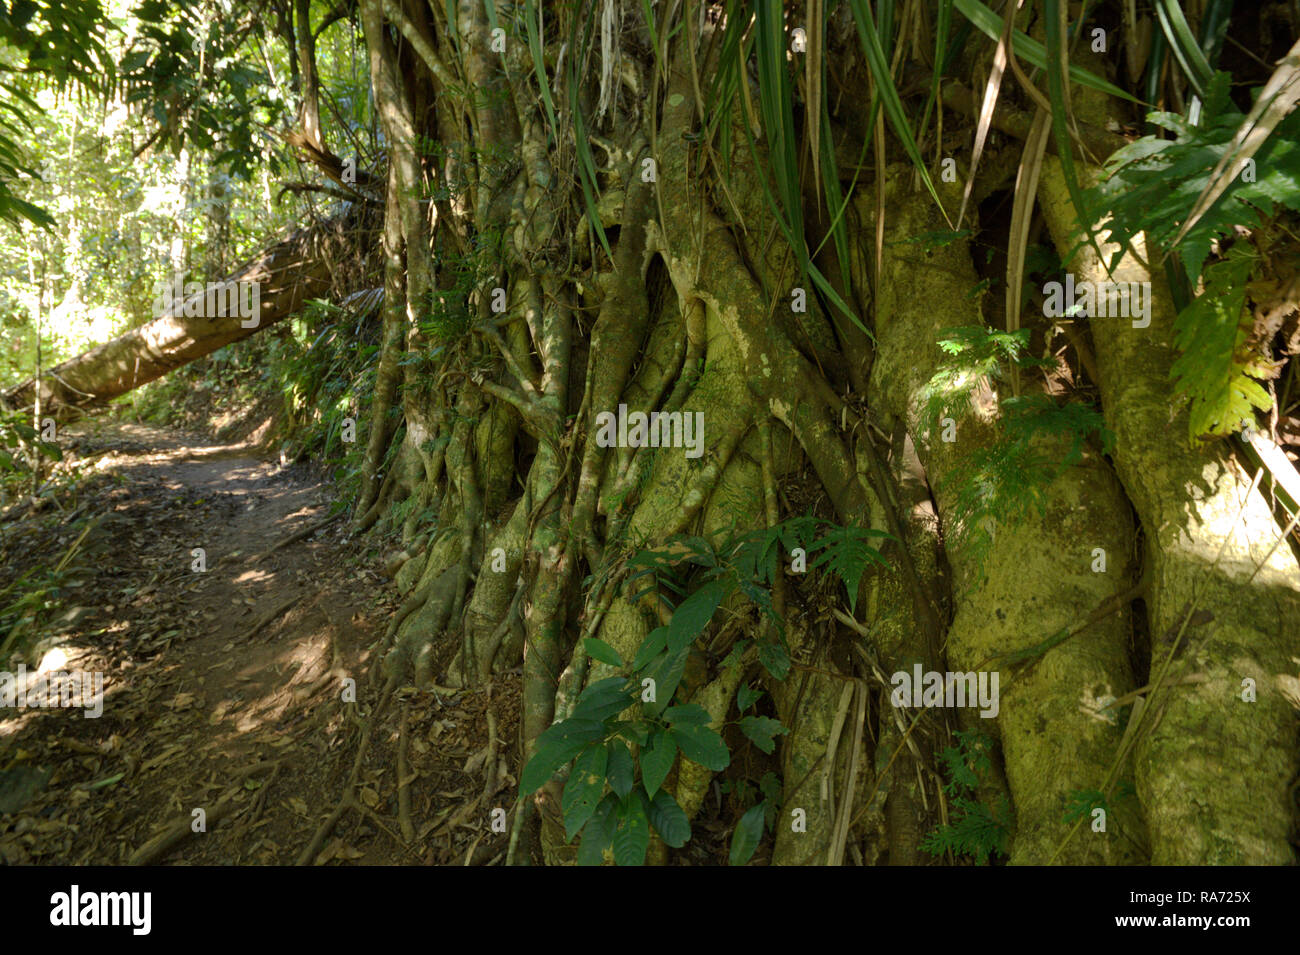 Feigenbaum am Rande eines Weges in die wunderschönen tropischen Regenwald des Wooroonooran National Park, North Queensland, Australien. Stockfoto